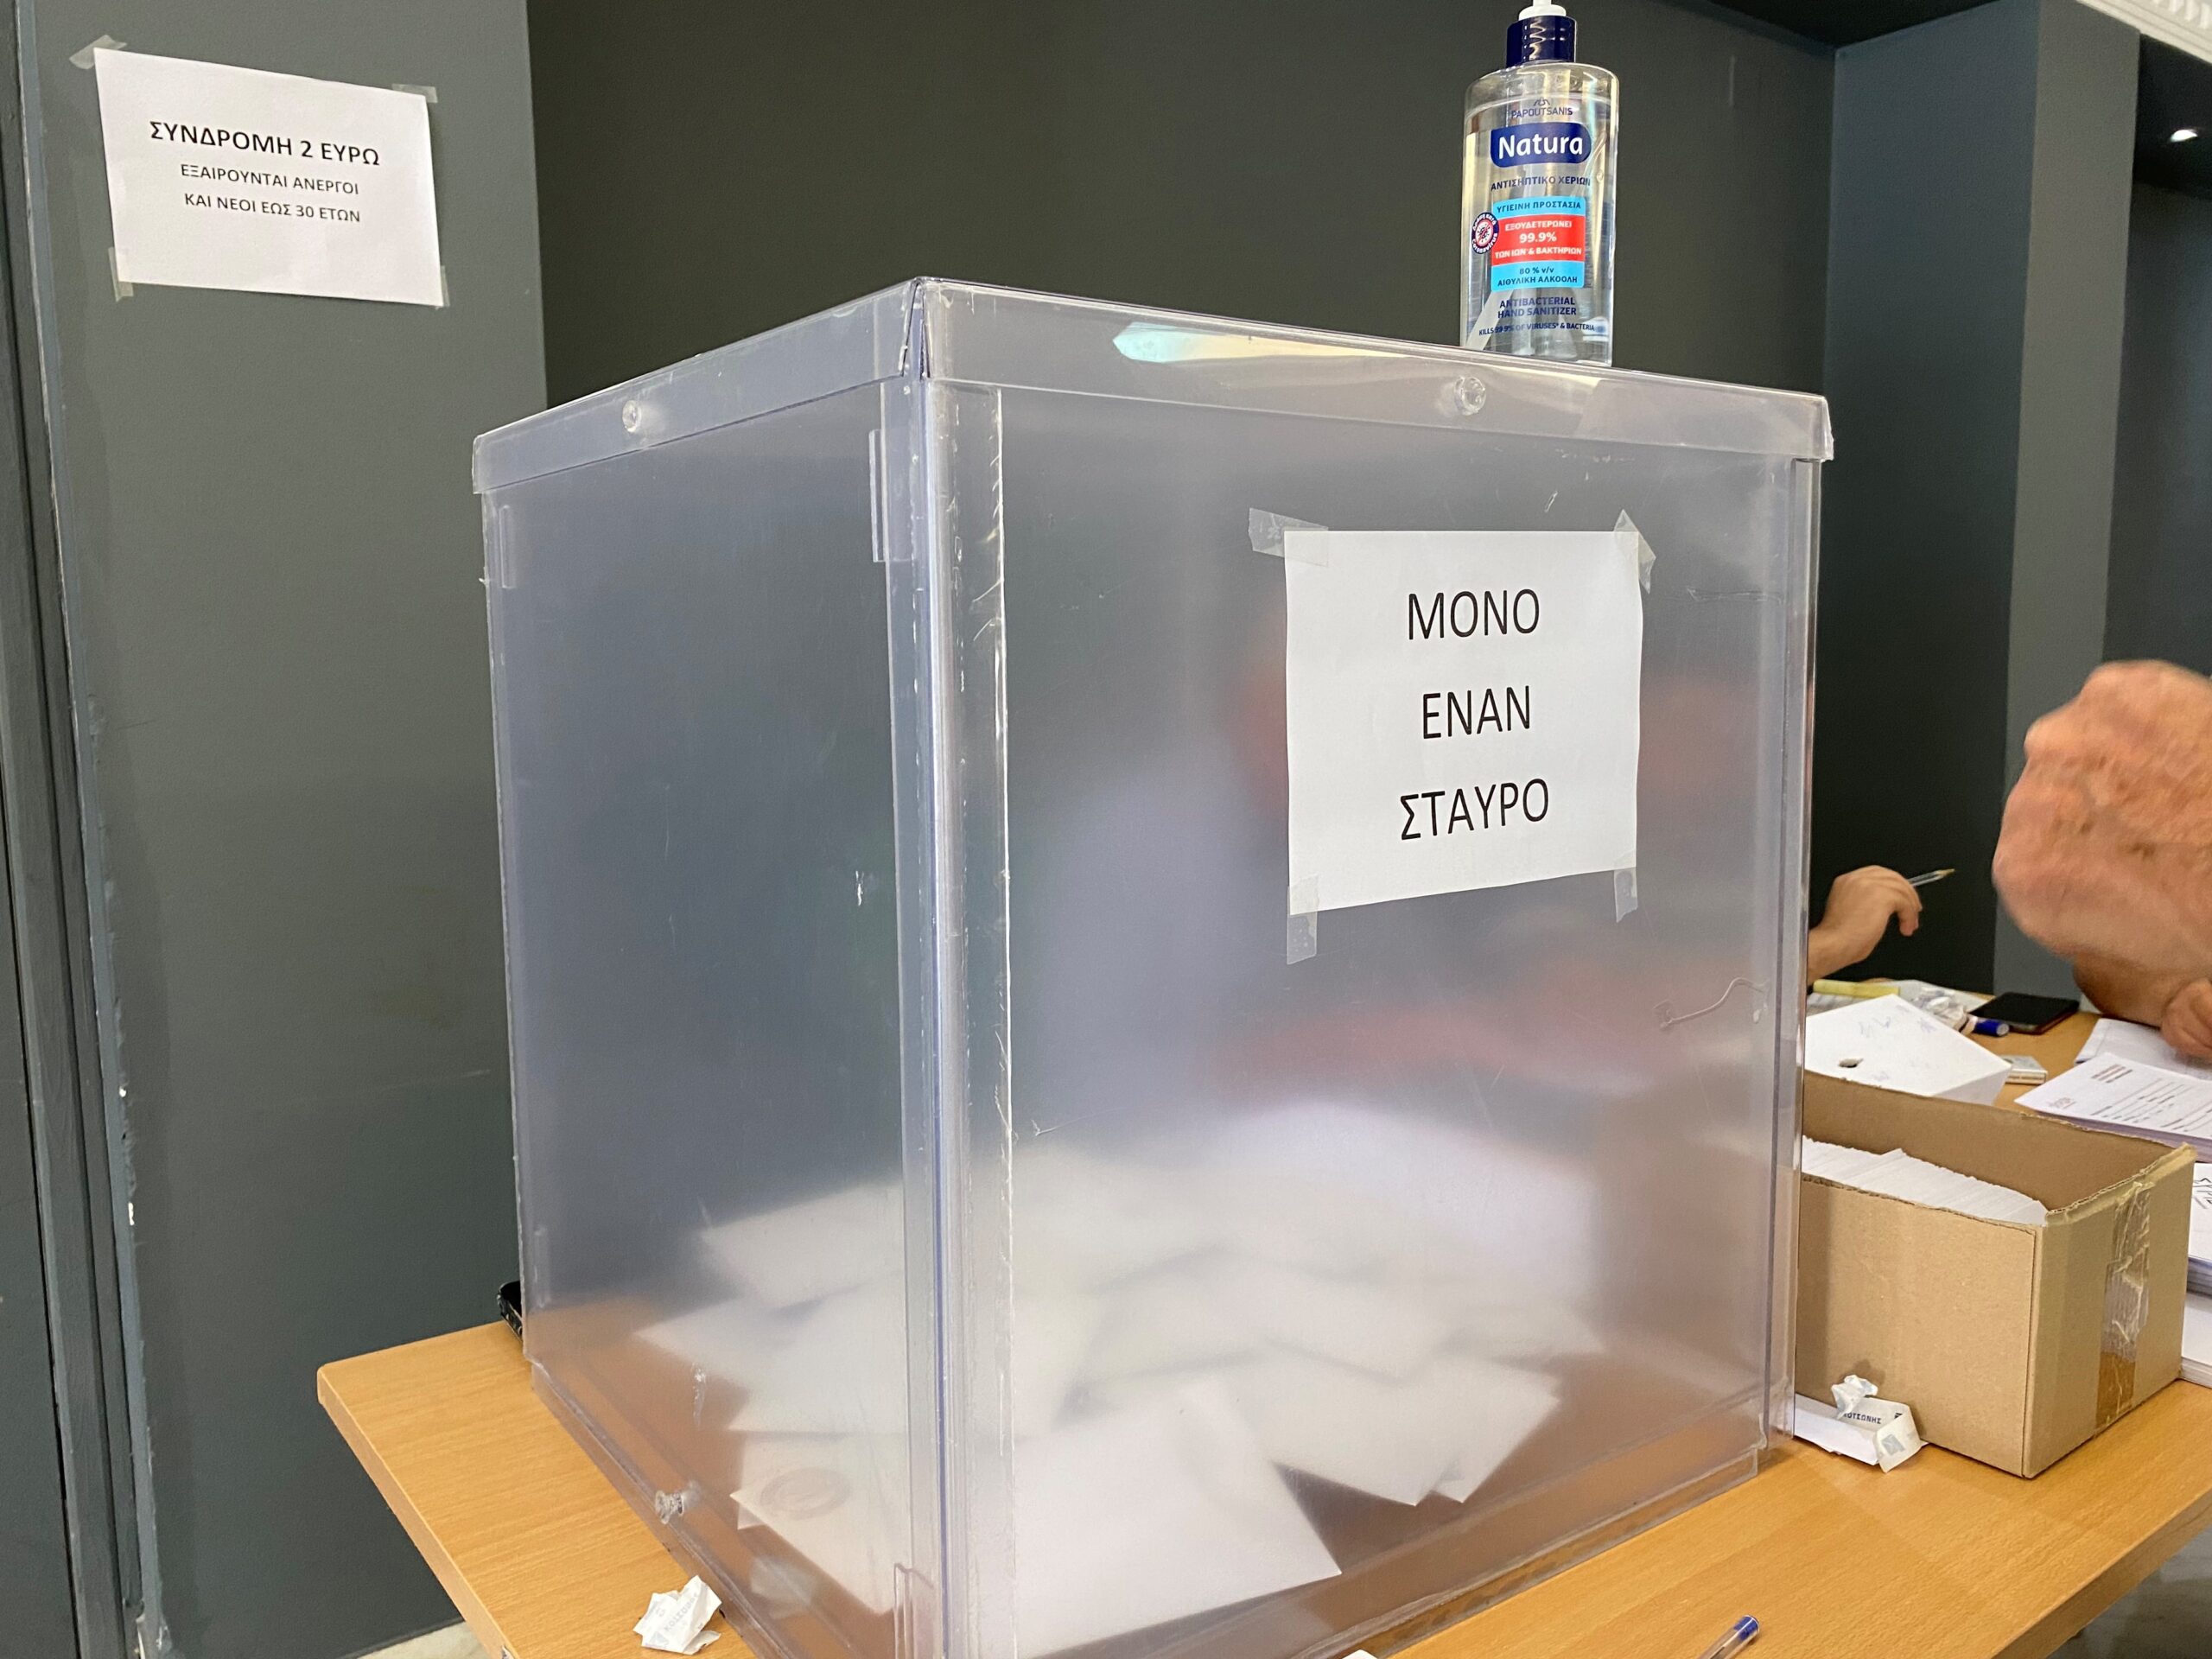 Αρκαδία: Ανακοινώθηκαν τα εκλογικά κέντρα για τις επαναληπτικές εκλογές στον ΣΥΡΙΖΑ Π. Σ.